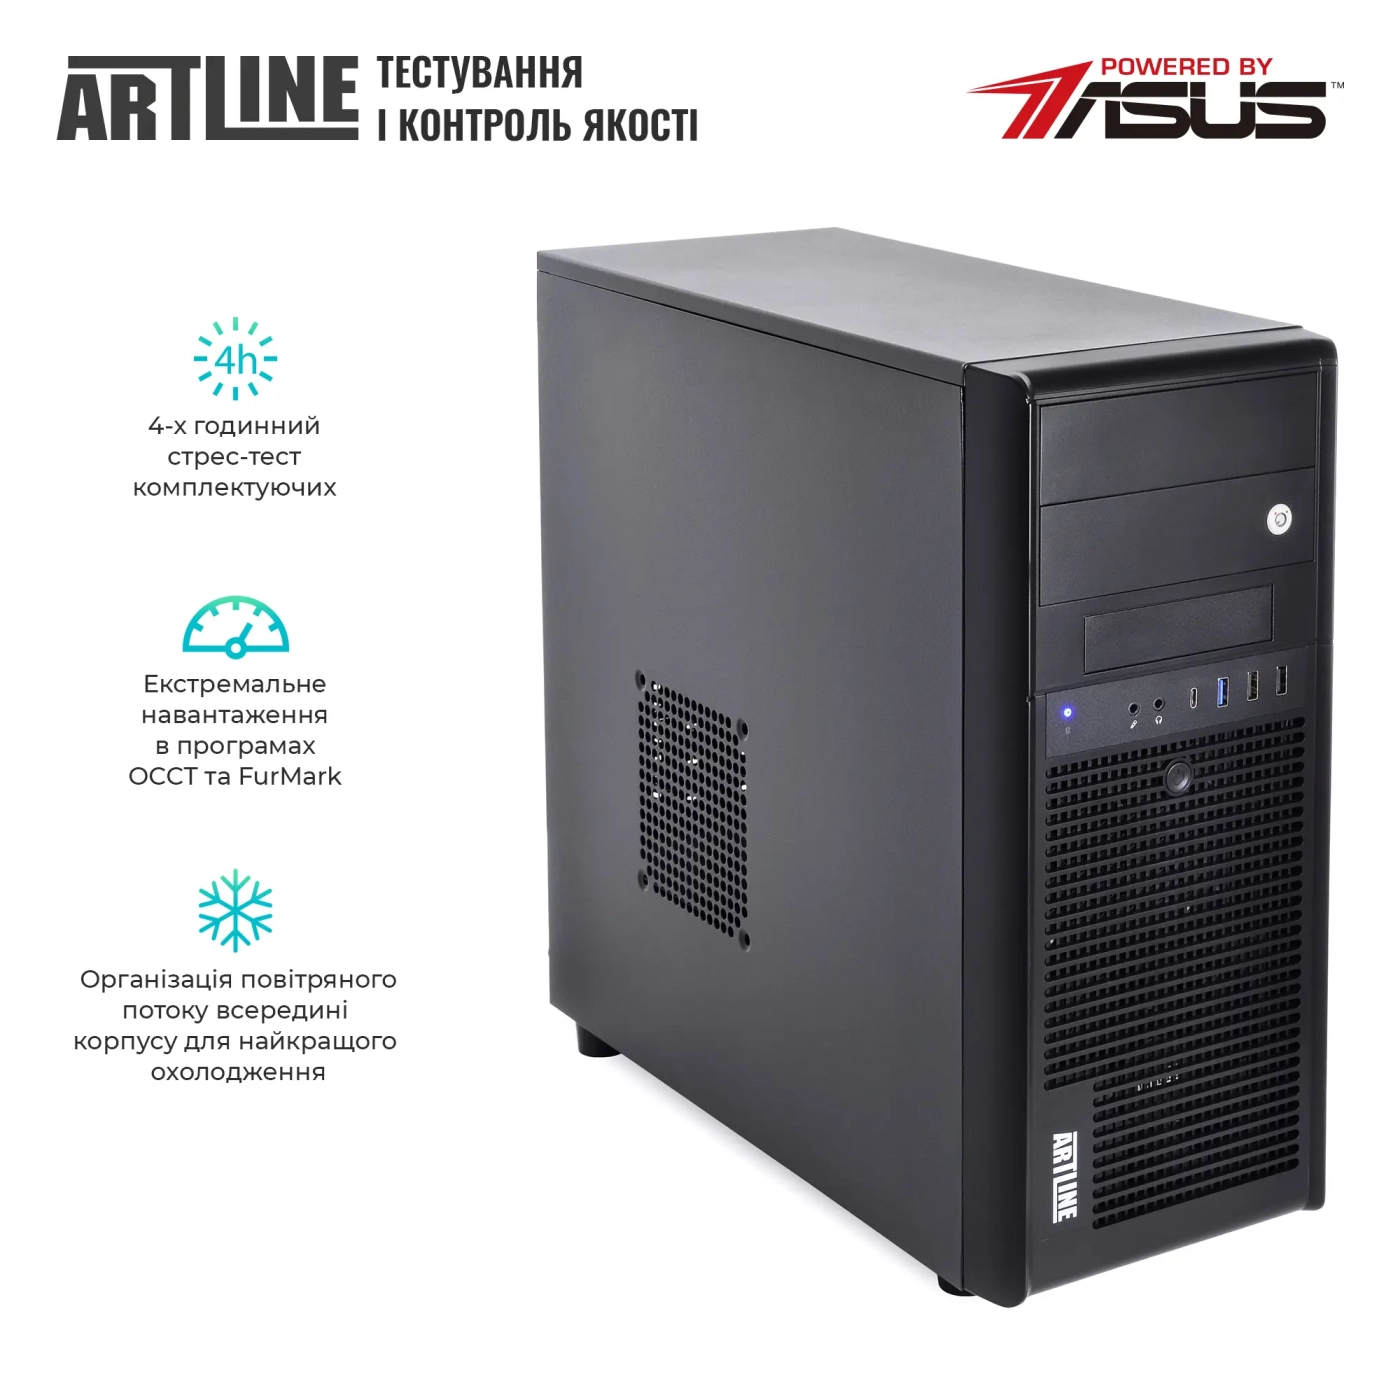 Купить Сервер ARTLINE Business T35v31 - фото 7